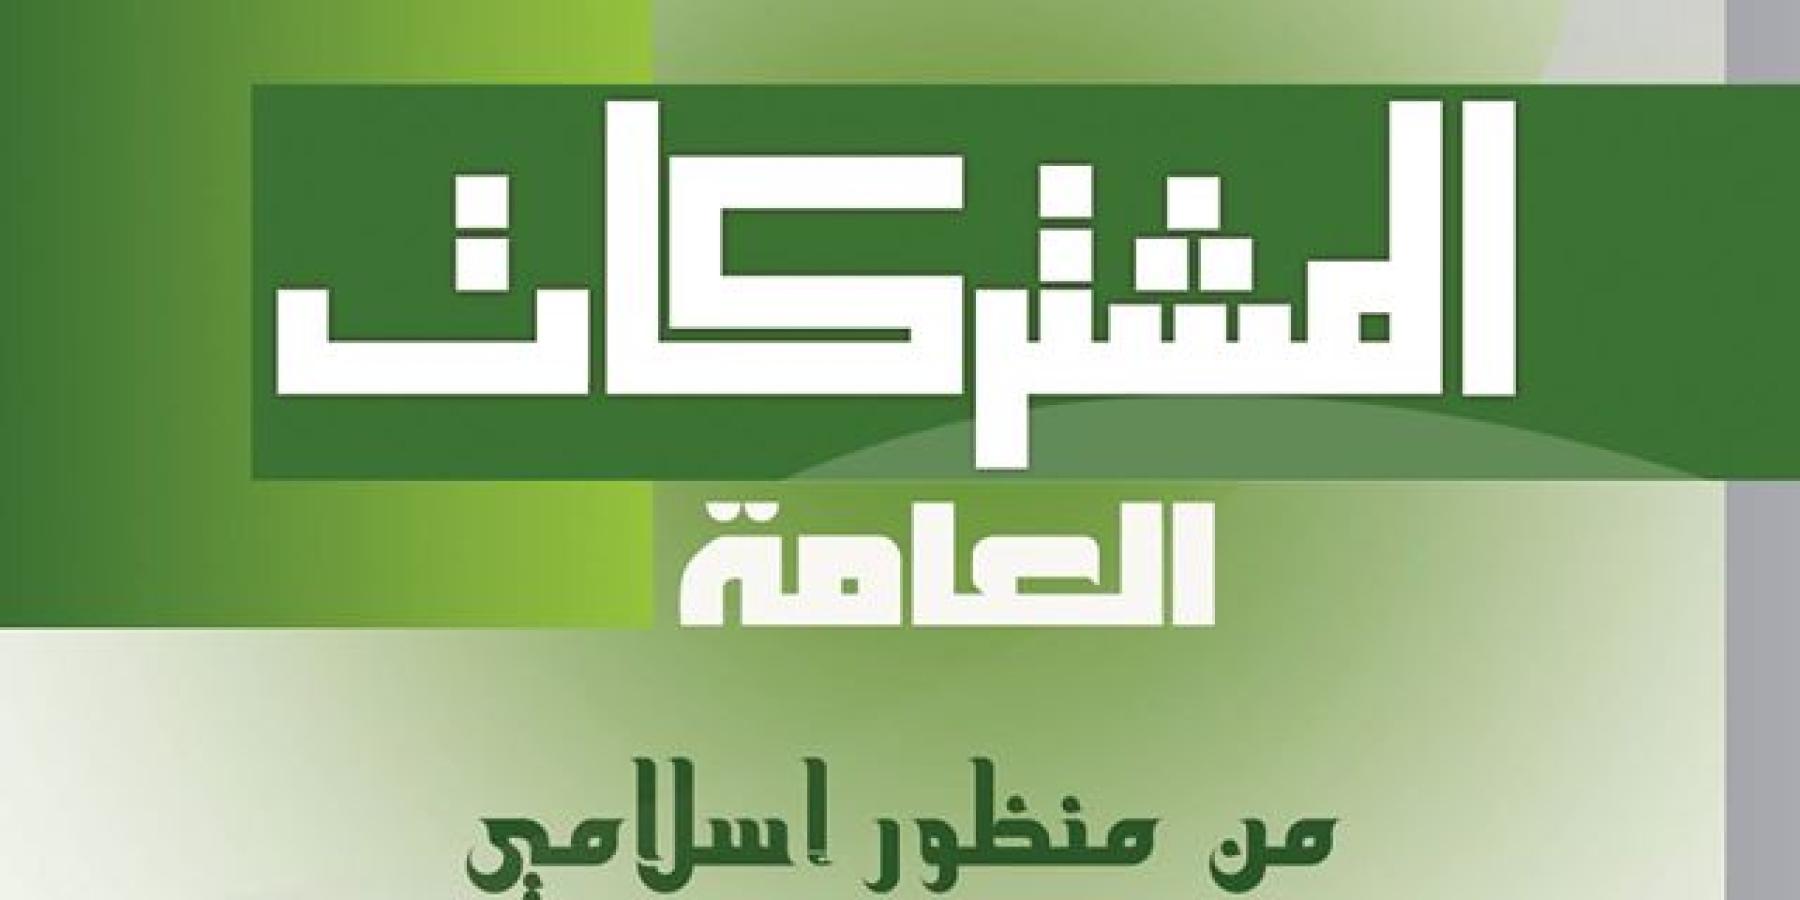 شعبة التبليغ الديني تصدر كتيب المشتركات العامة من منظور اسلامي (حقوق وواجبات)  